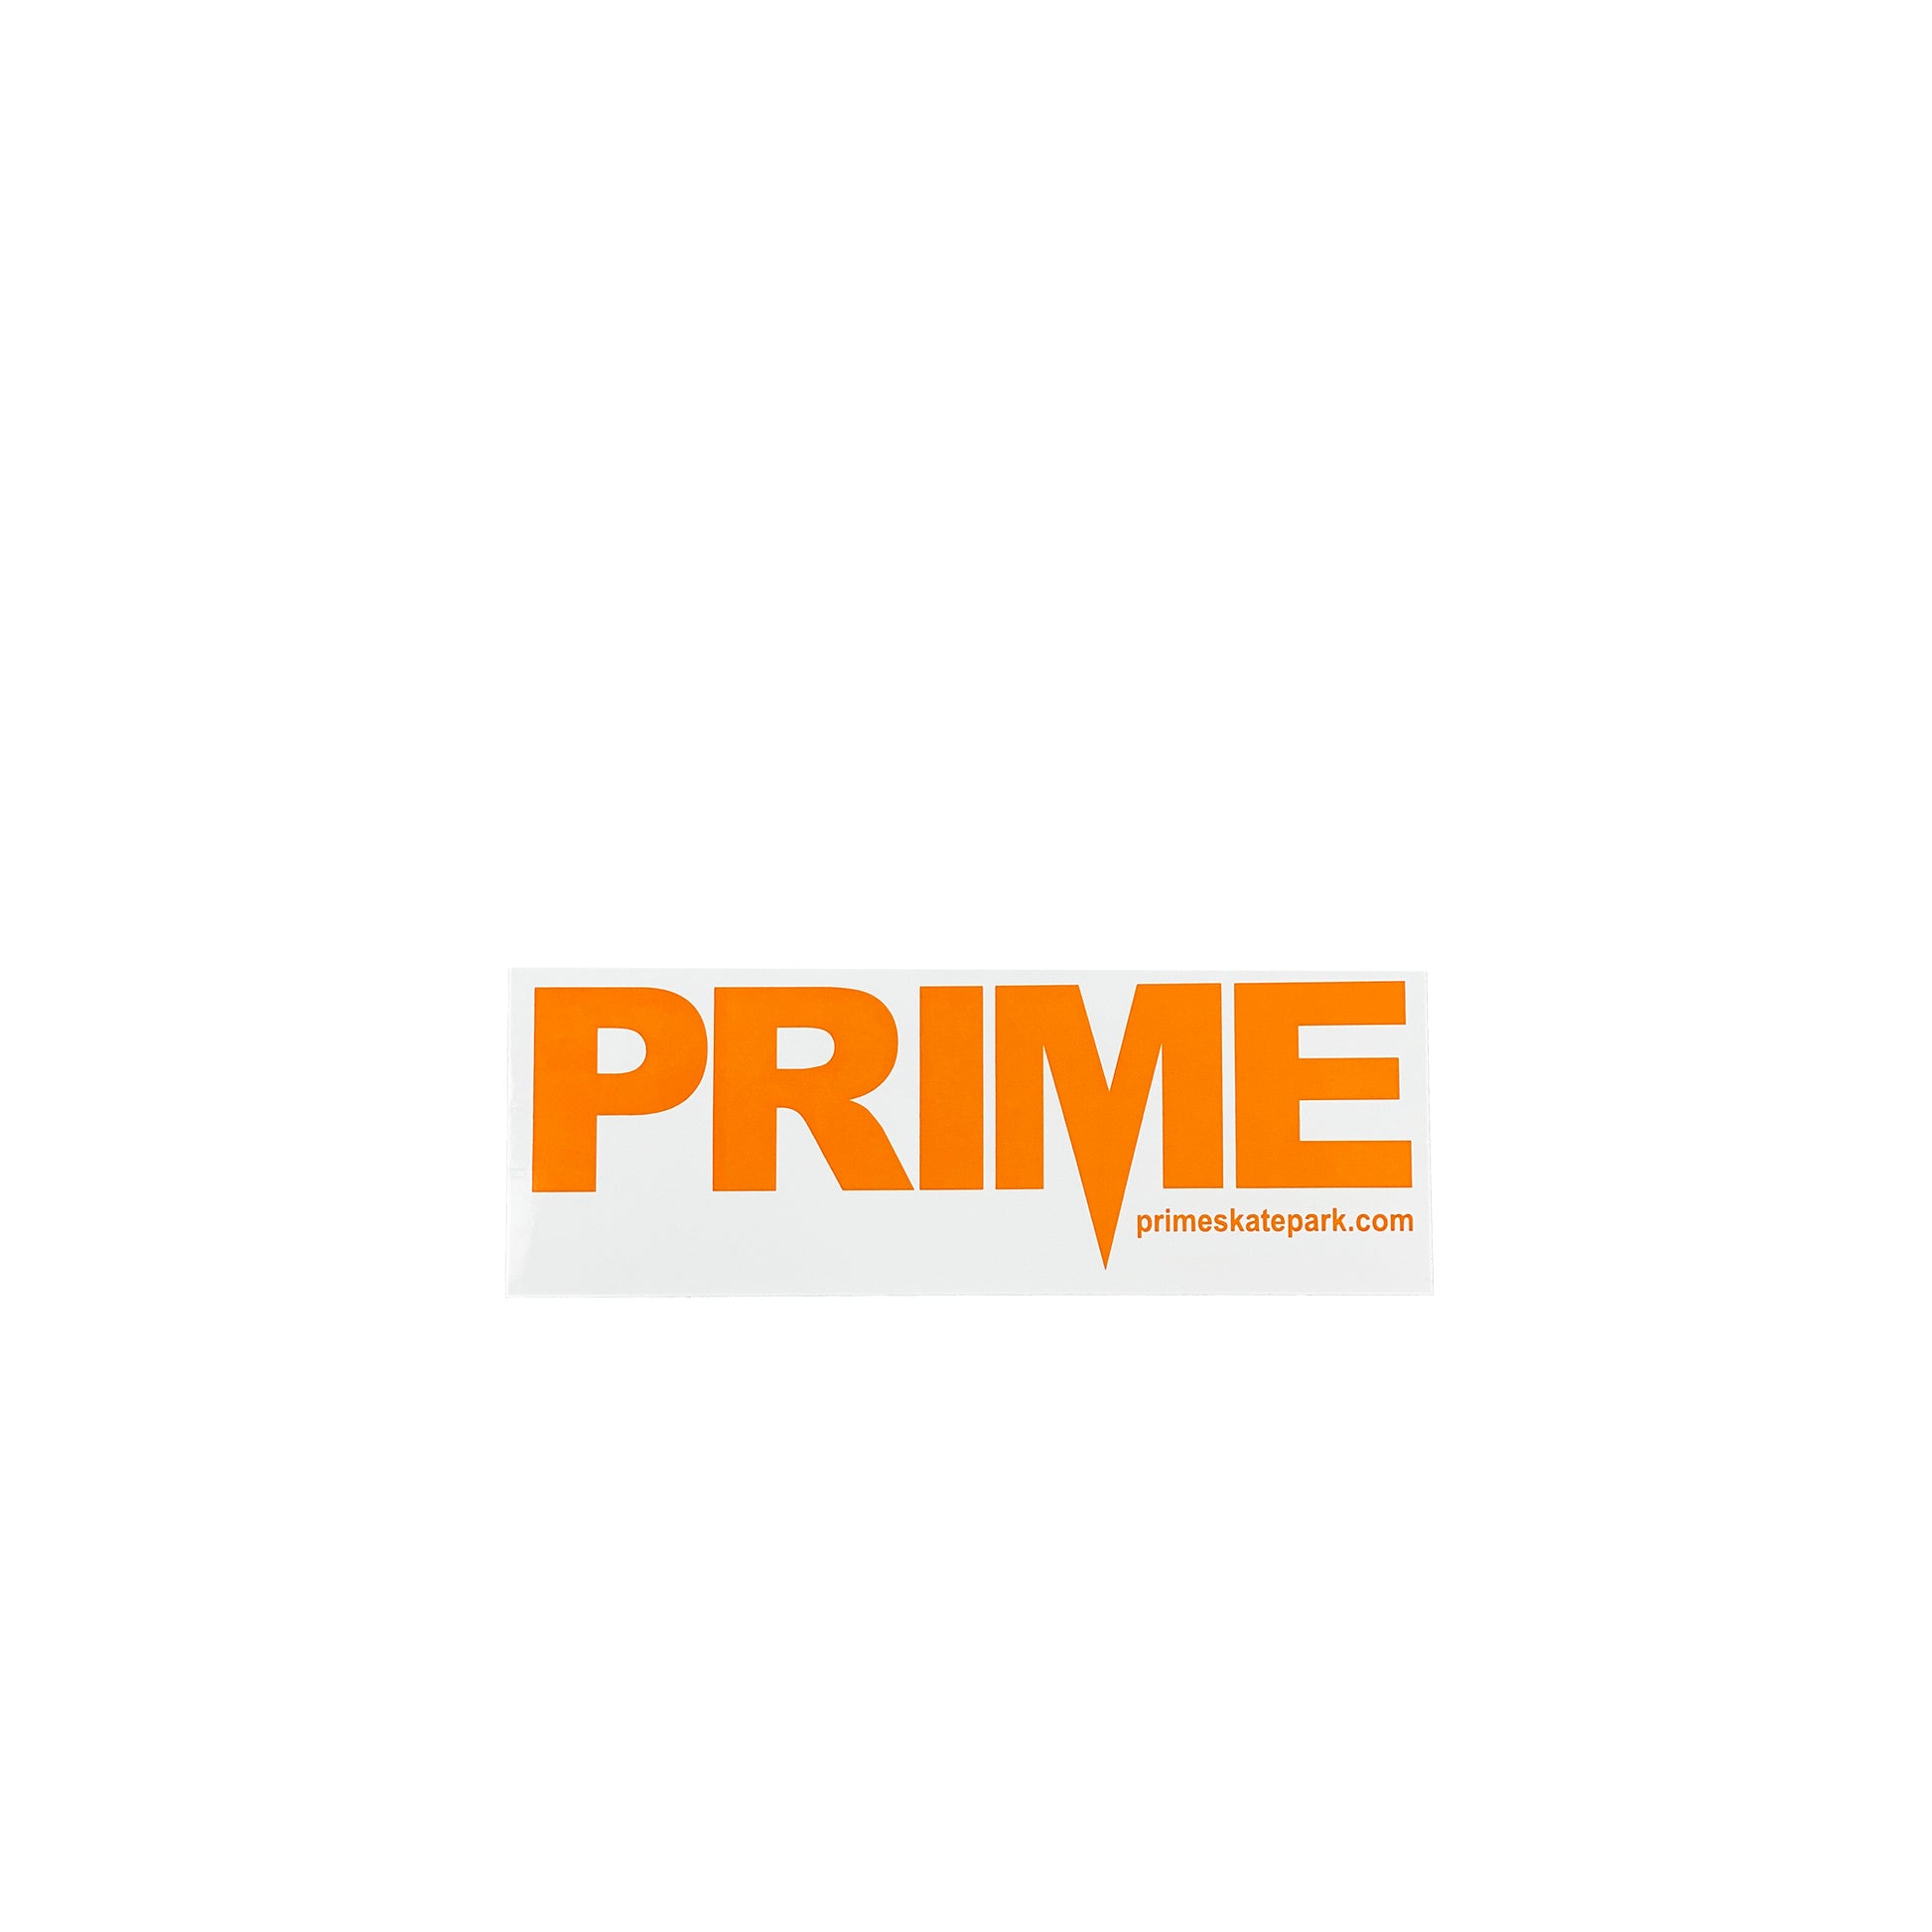 Prime Delux OG SP Sticker M - Orange / White - Prime Delux Store